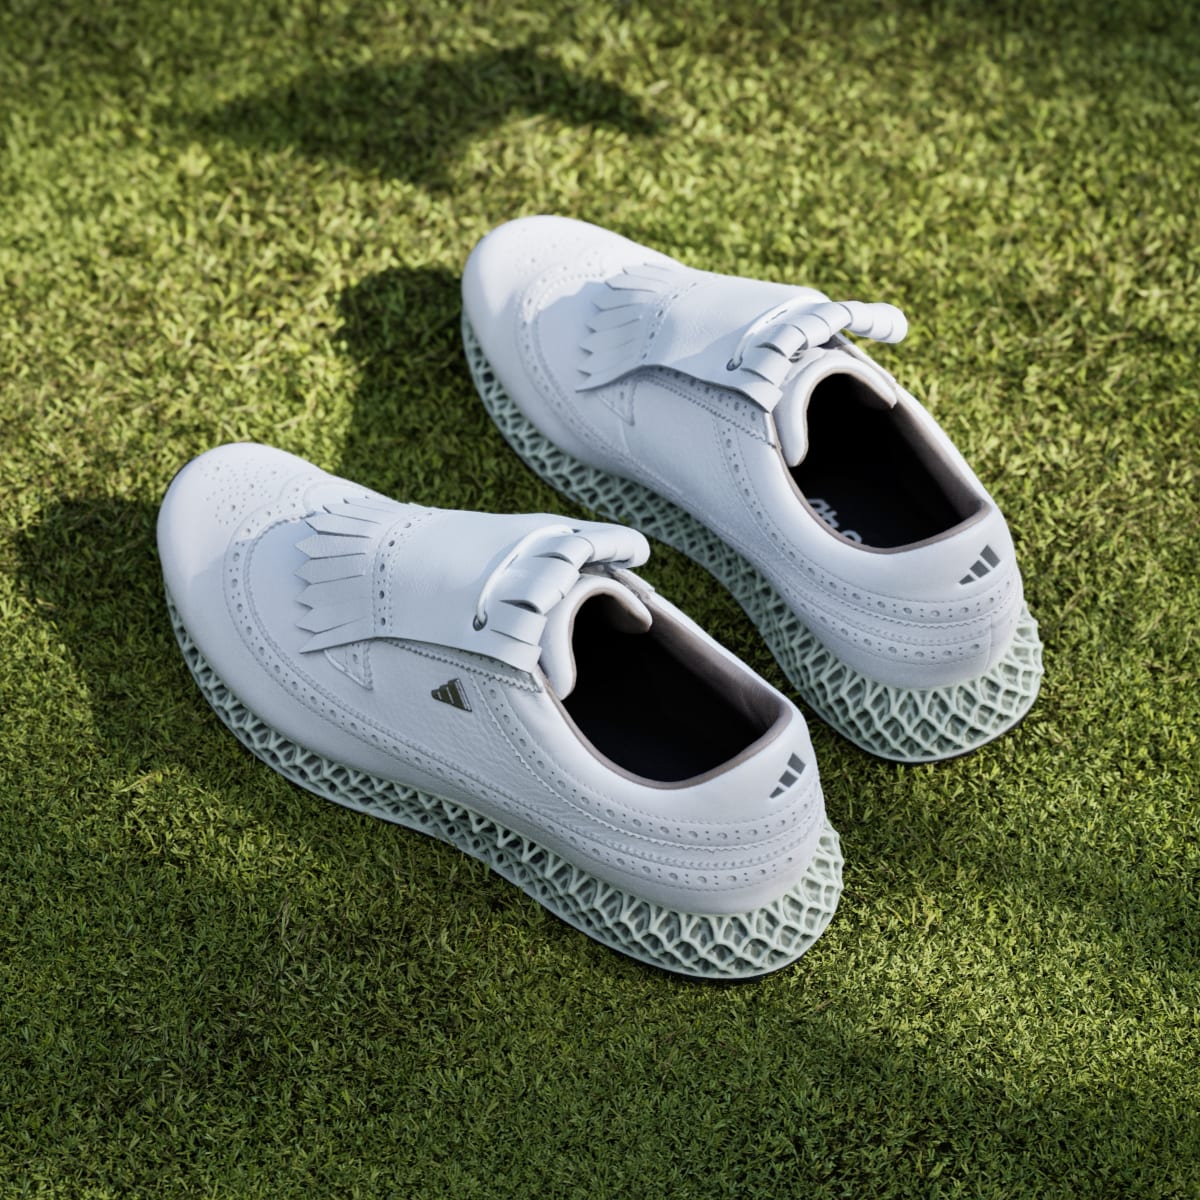 Adidas MC87 Adicross 4D Spikeless Golf Shoes. 7